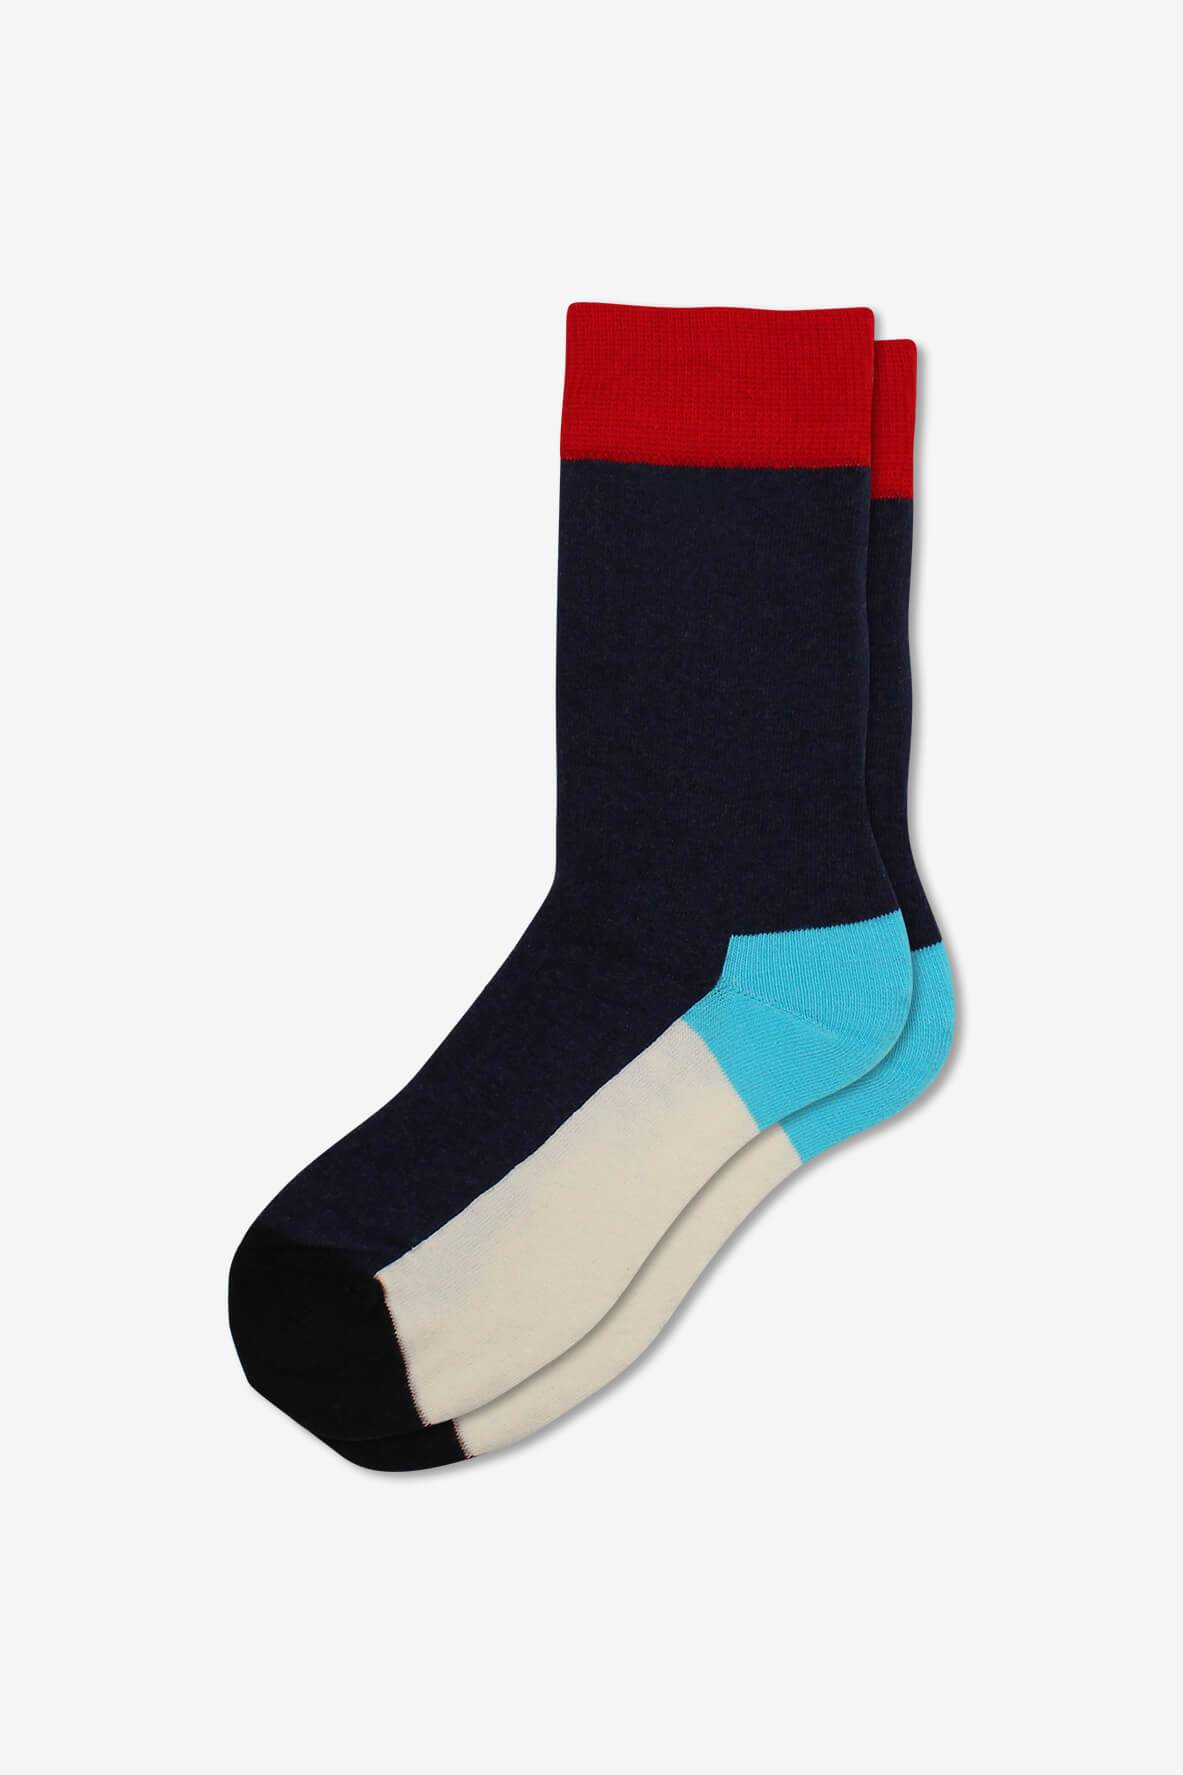 Socks IMG_5247, socks, GoTie